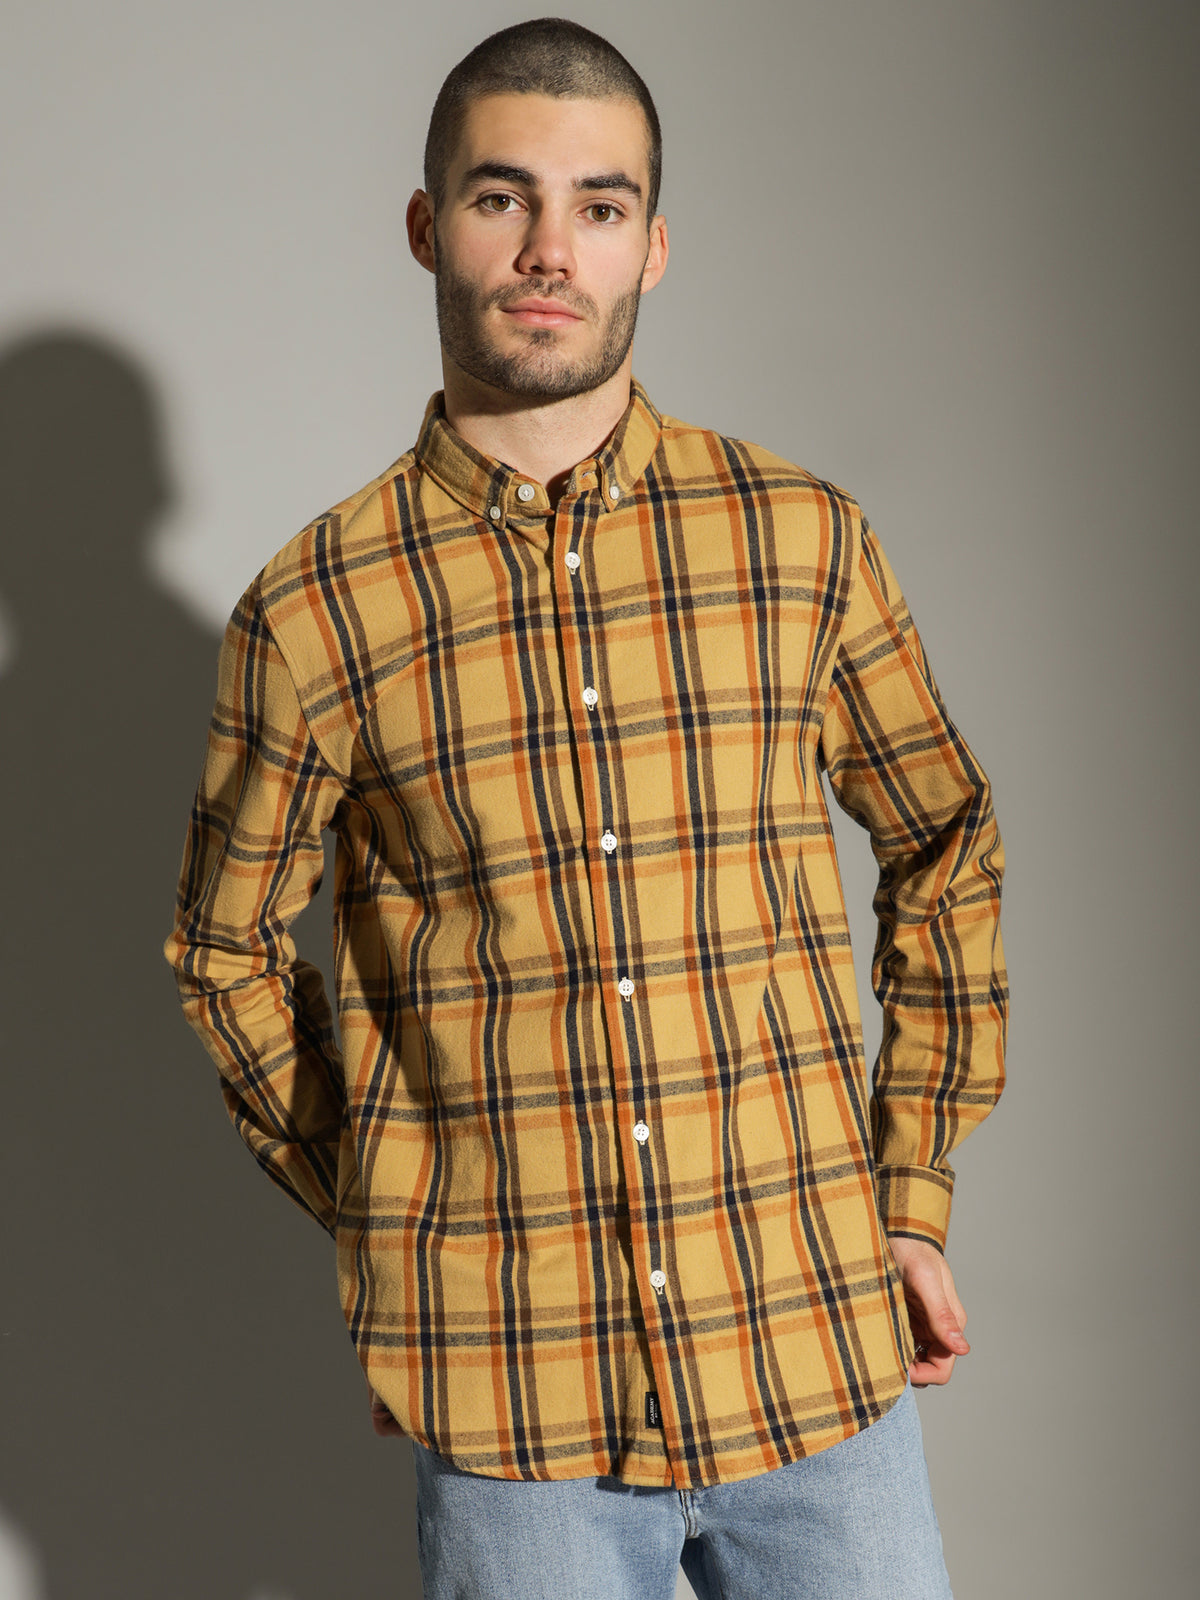 Hutch Long Sleeve Shirt in Macadamia